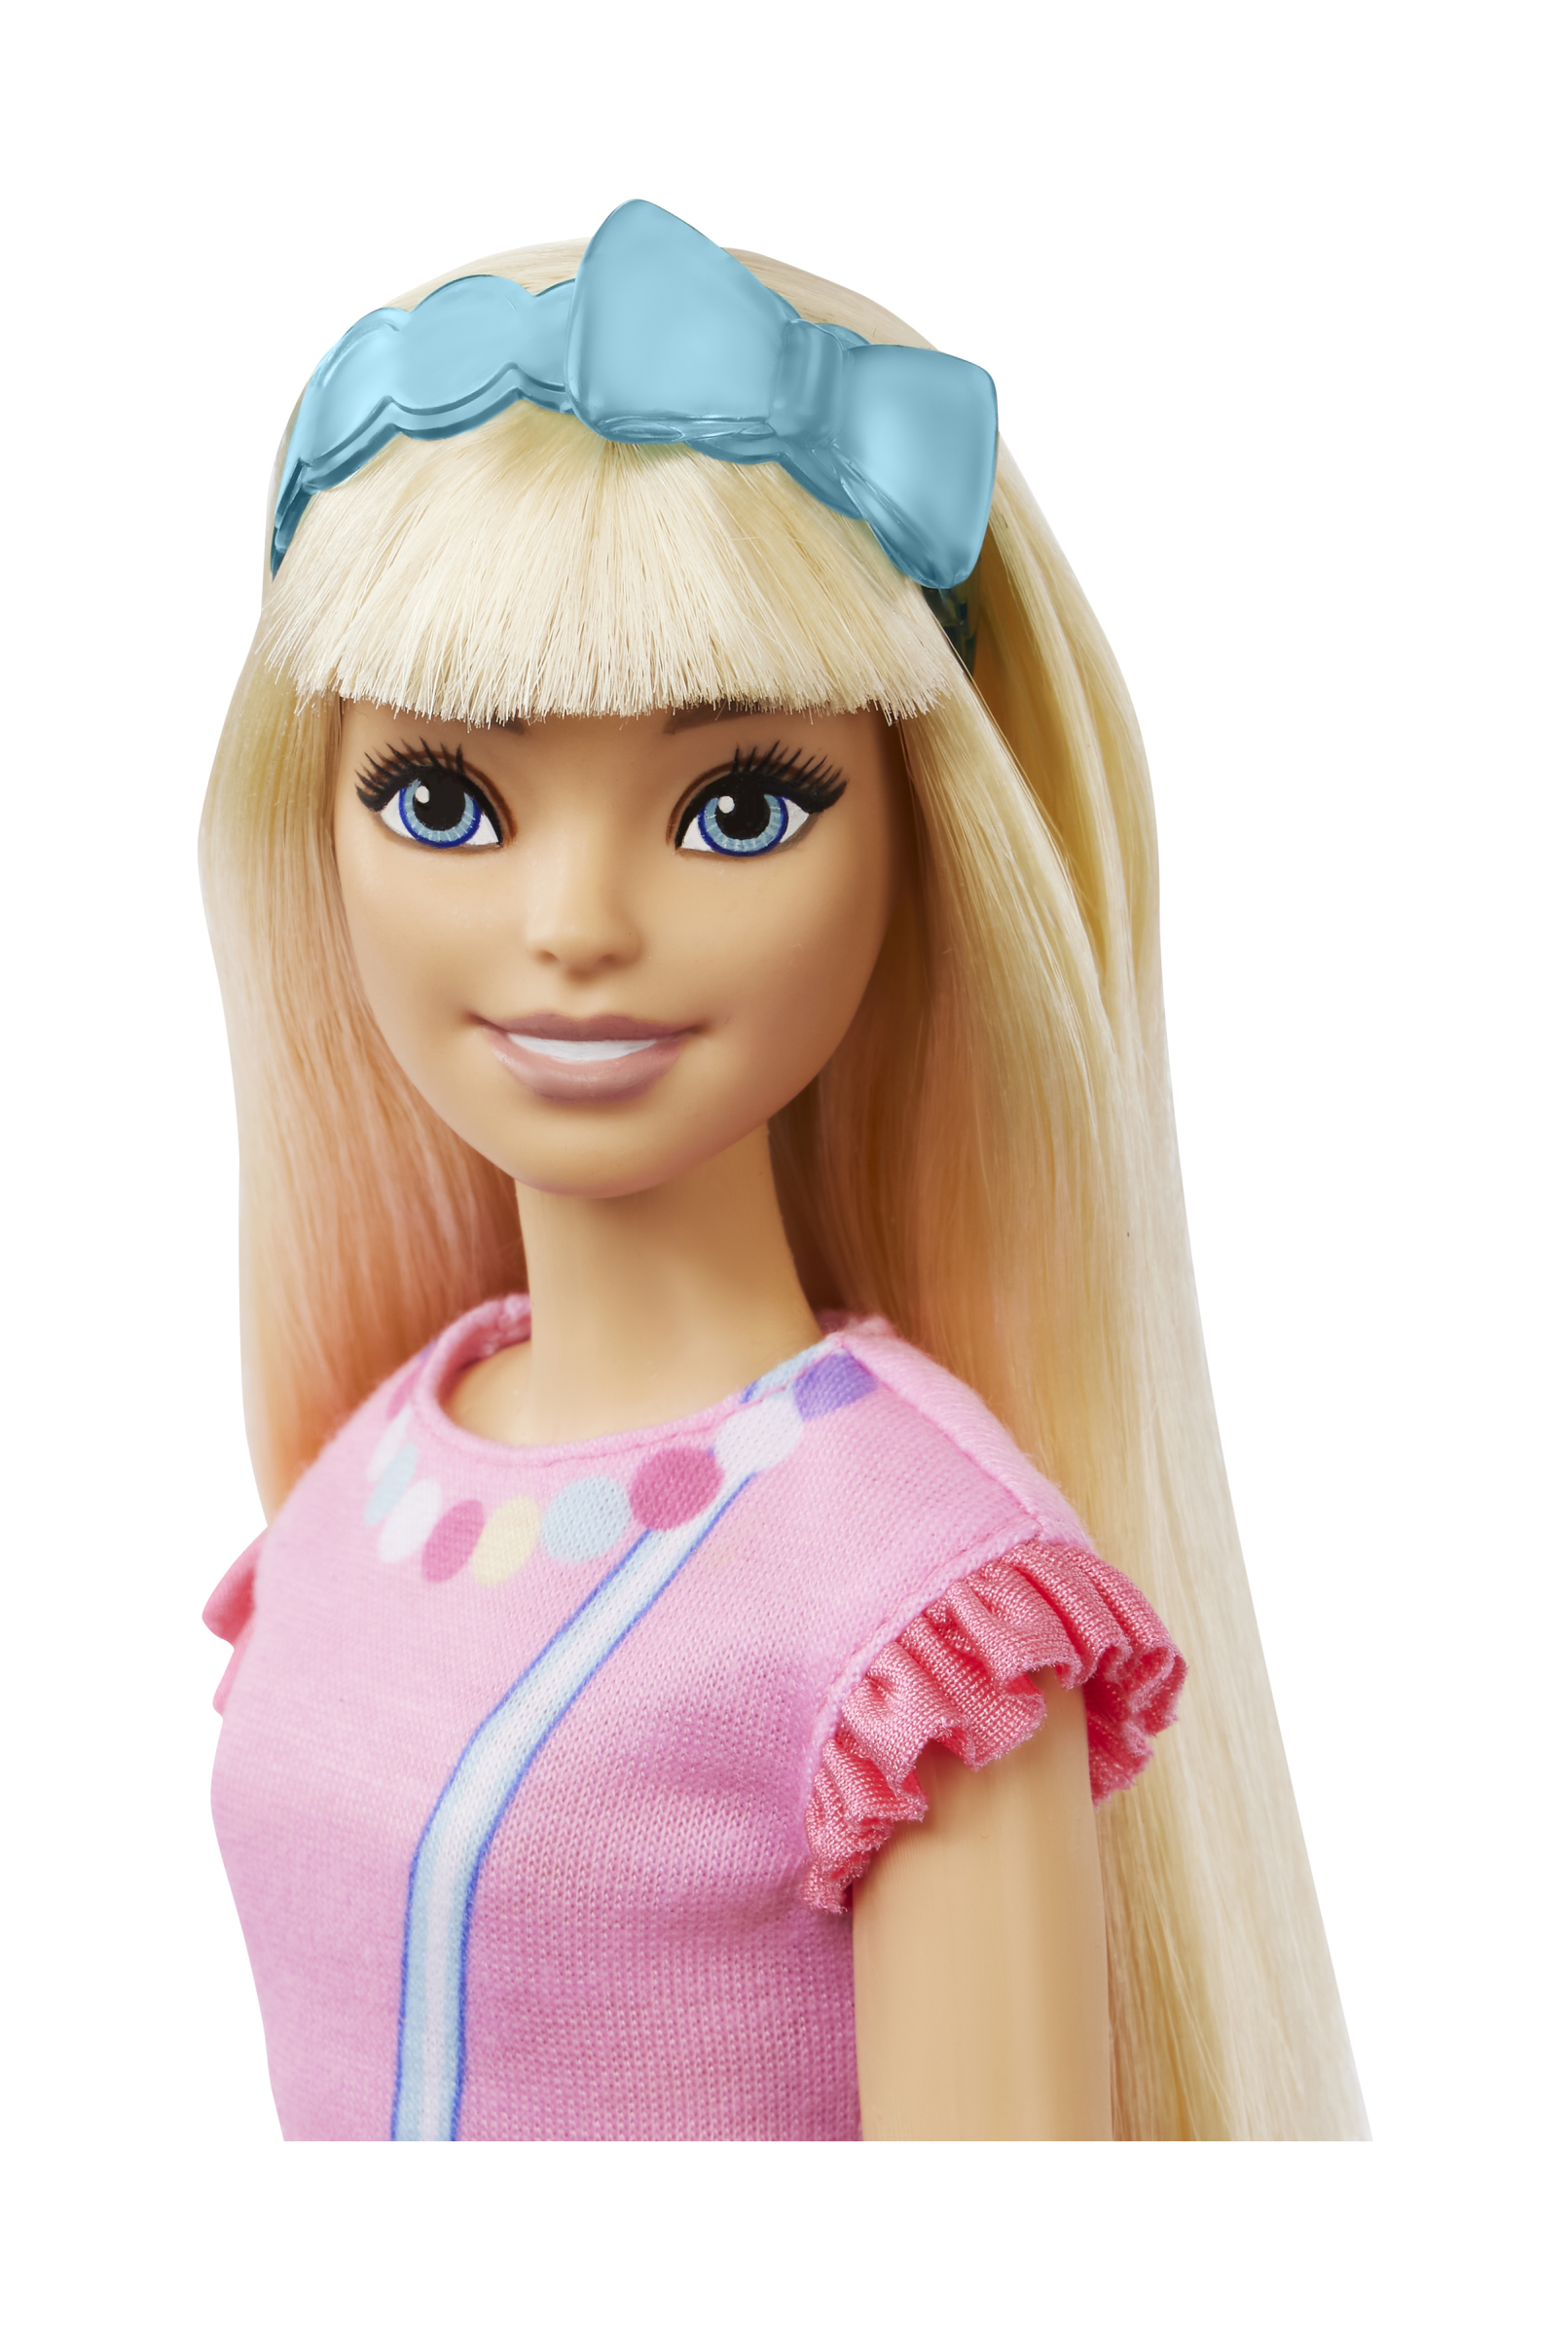 Barbie - la mia prima barbie, bambola alta 34 cm con busto morbido e arti snodati,  abito rosa e una borsetta a forma di cuore, accessori e cucciolo di peluche, giocattolo, 3+ anni, hll19 - Barbie